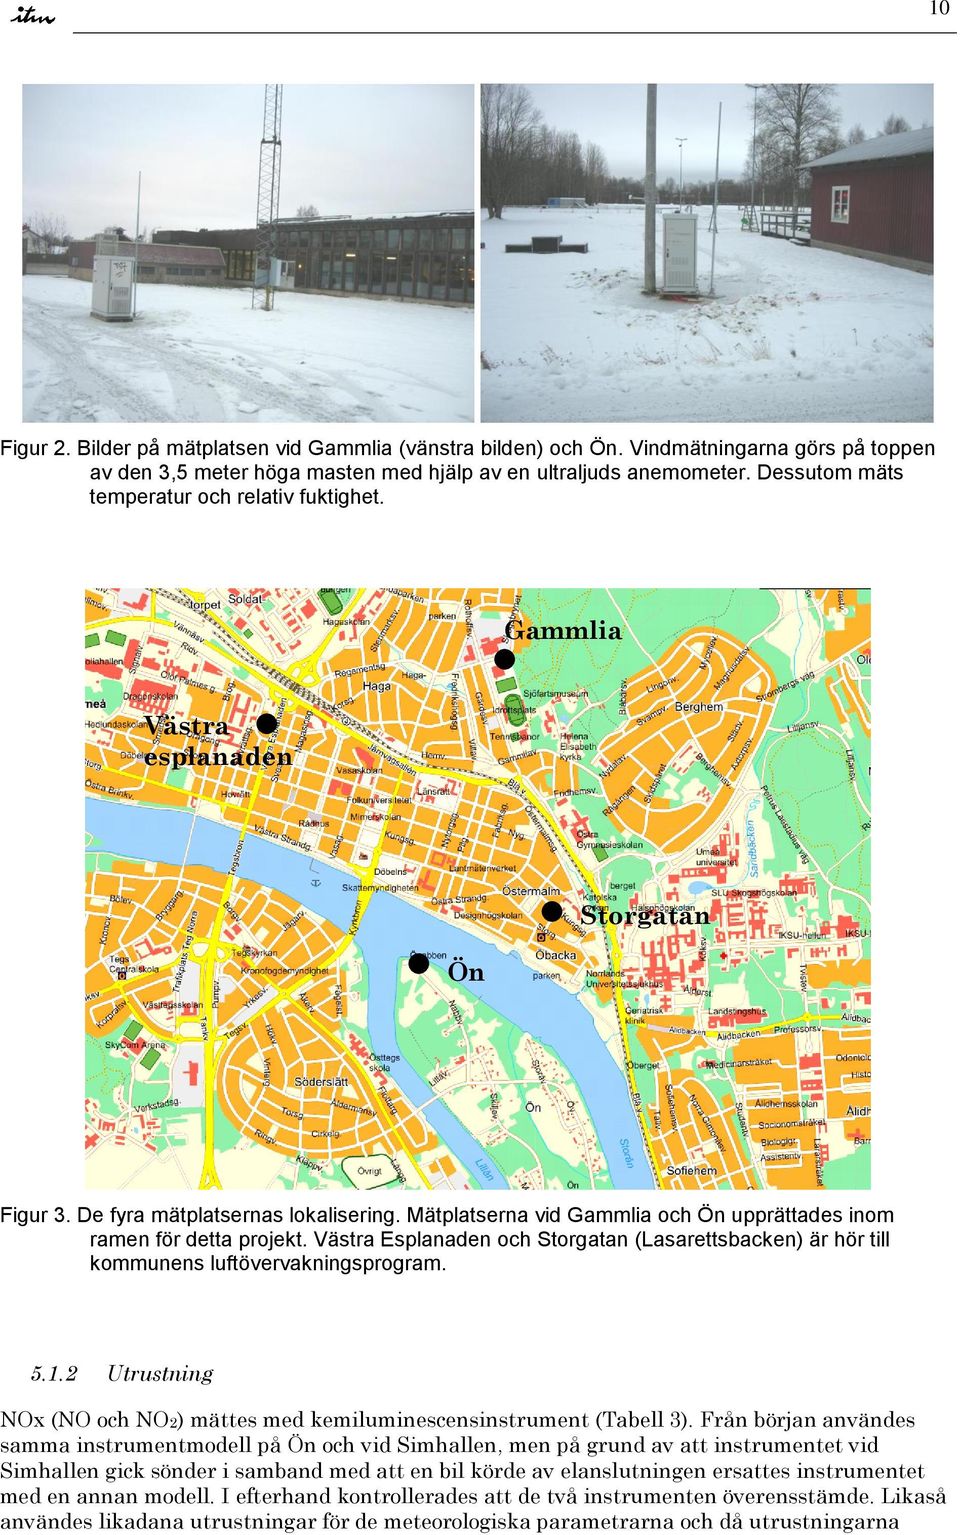 Mätplatserna vid Gammlia och Ön upprättades inom ramen för detta projekt. Västra Esplanaden och Storgatan (Lasarettsbacken) är hör till kommunens luftövervakningsprogram. 5.1.